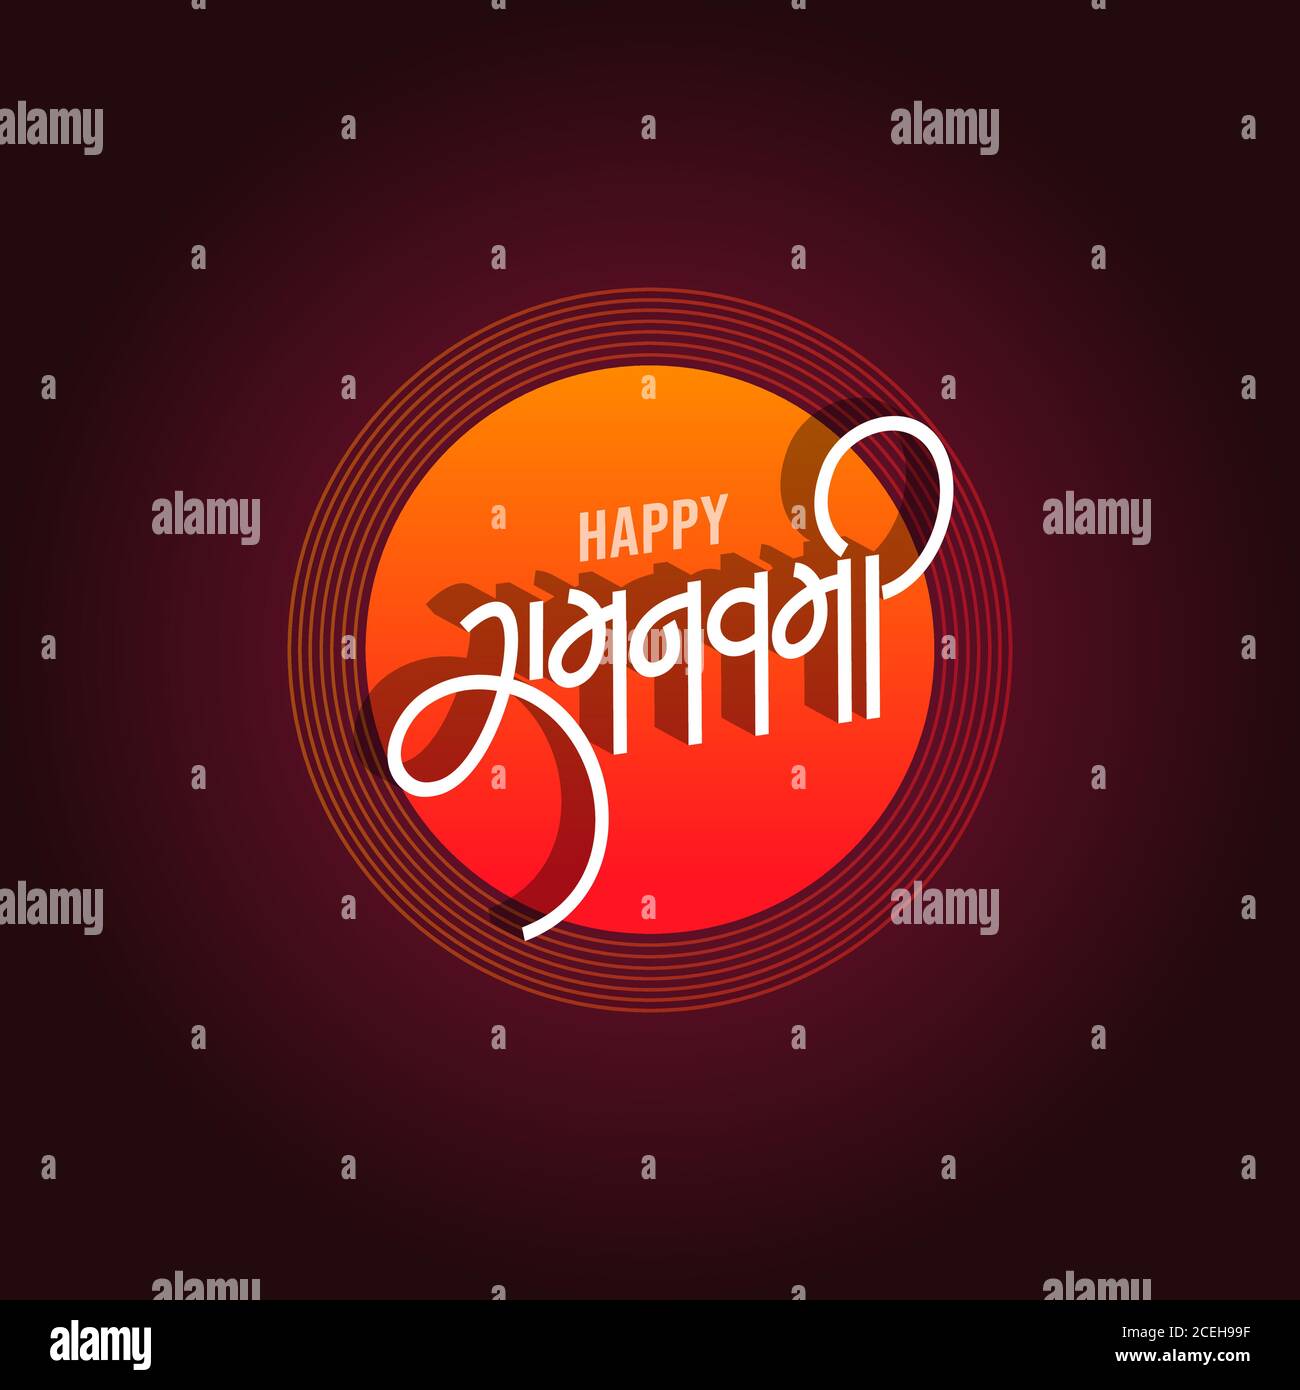 Happy Ram Navami Greetings Stock Vector